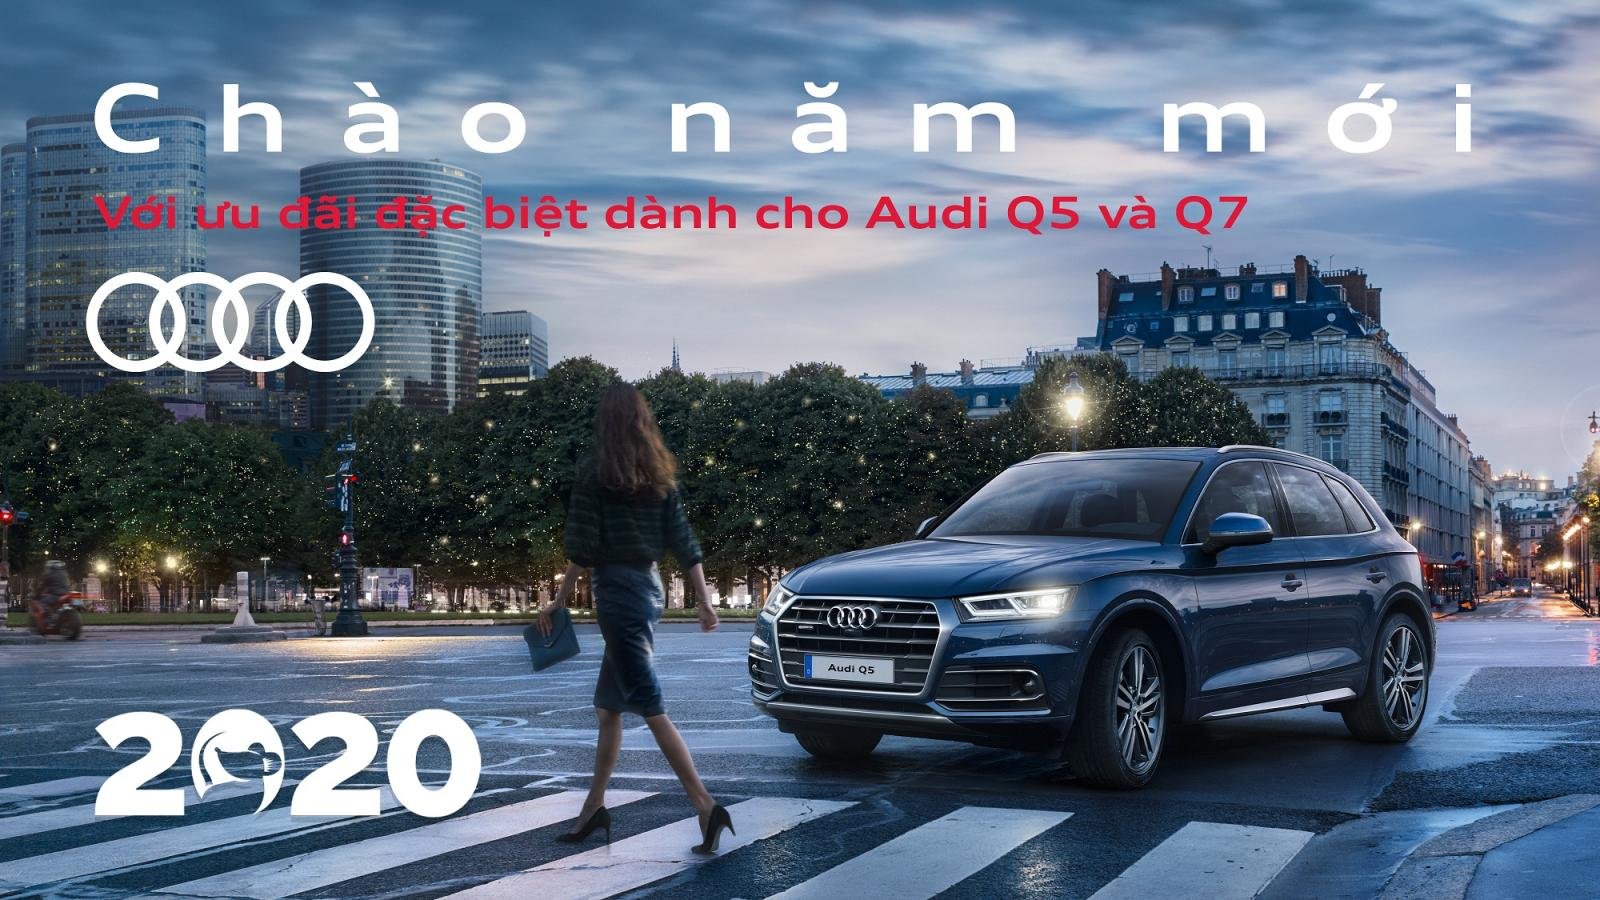 Giá xe Audi Q5, Q7 giảm đến 300 triệu cho khách mua trước Tết 2020 1a